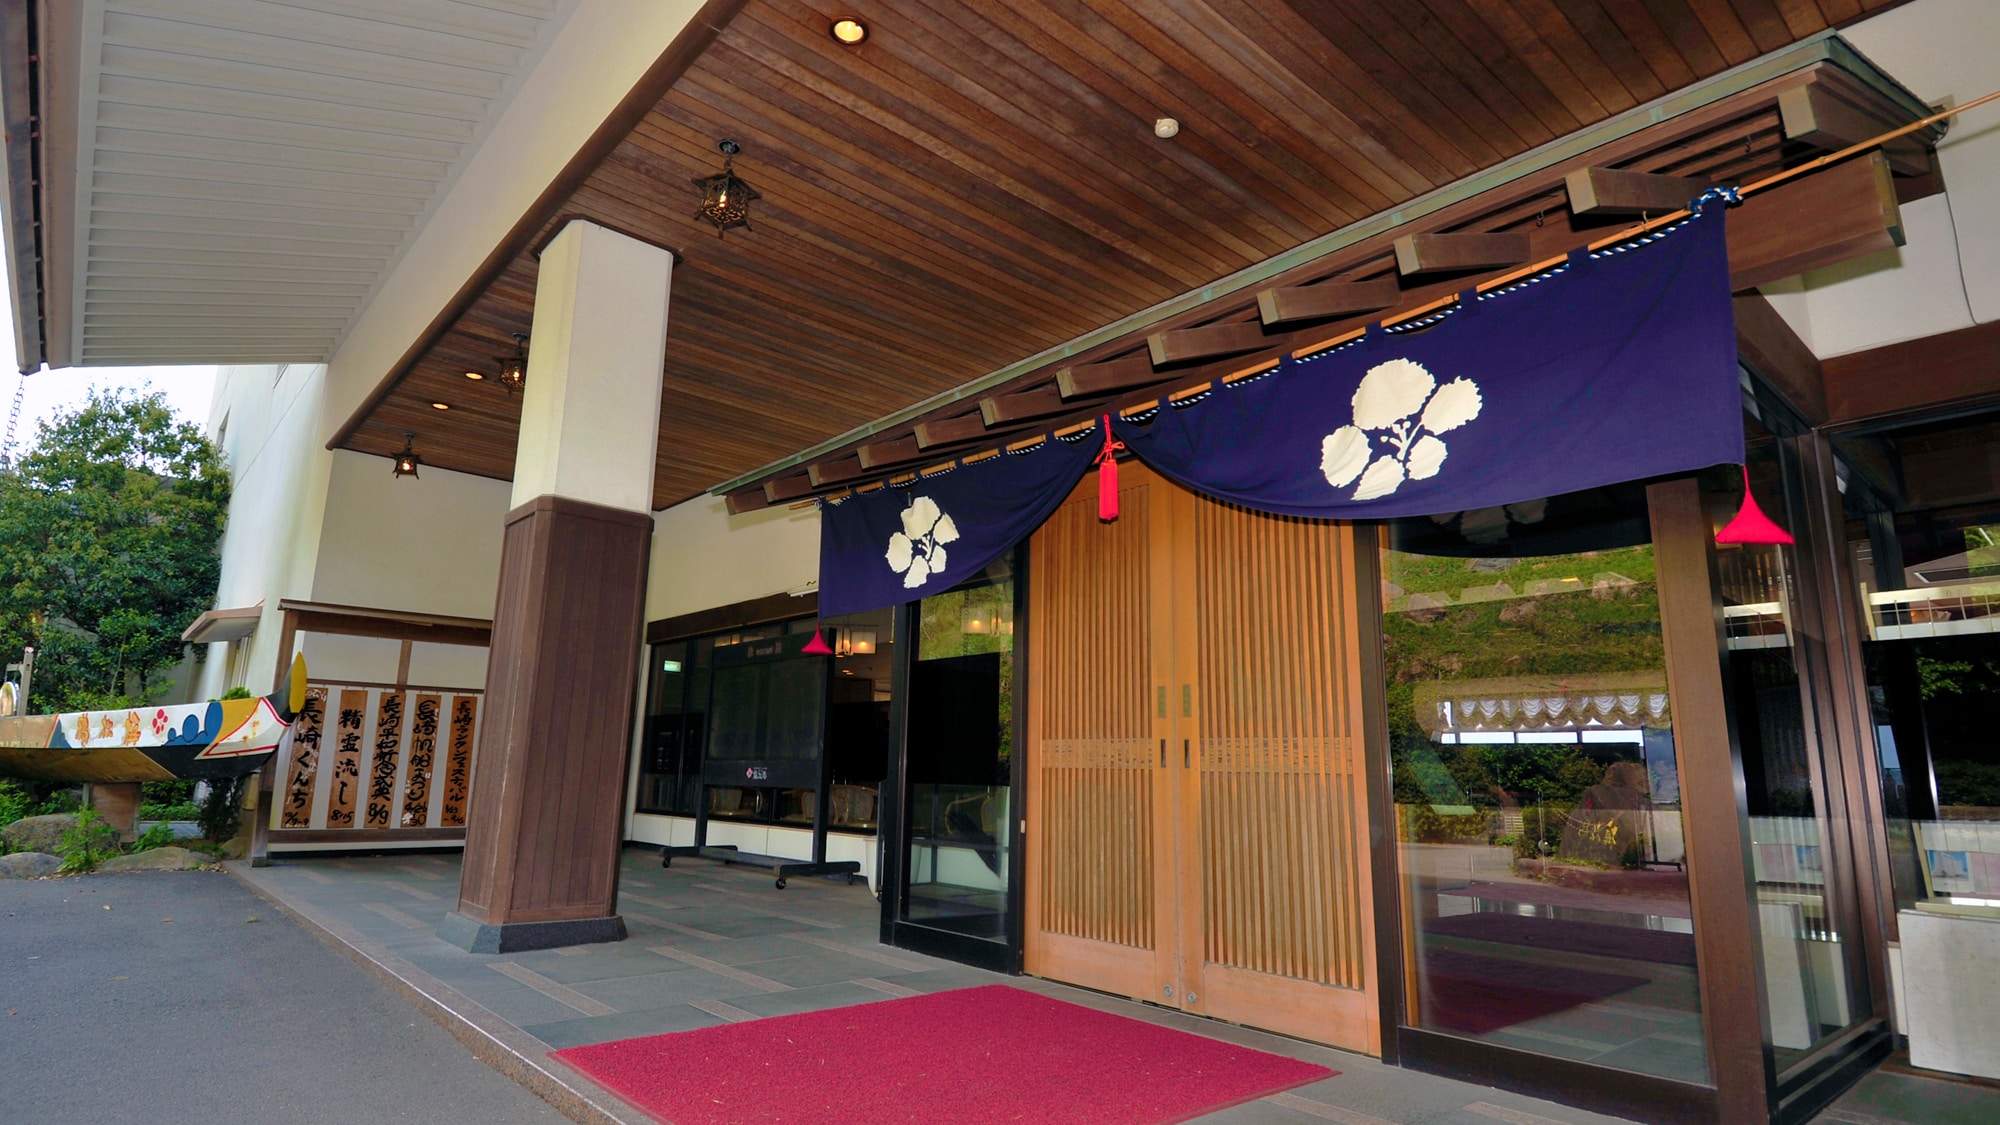 ● 日式正门。大厅是融合了日式和西式风格的实用旅馆。